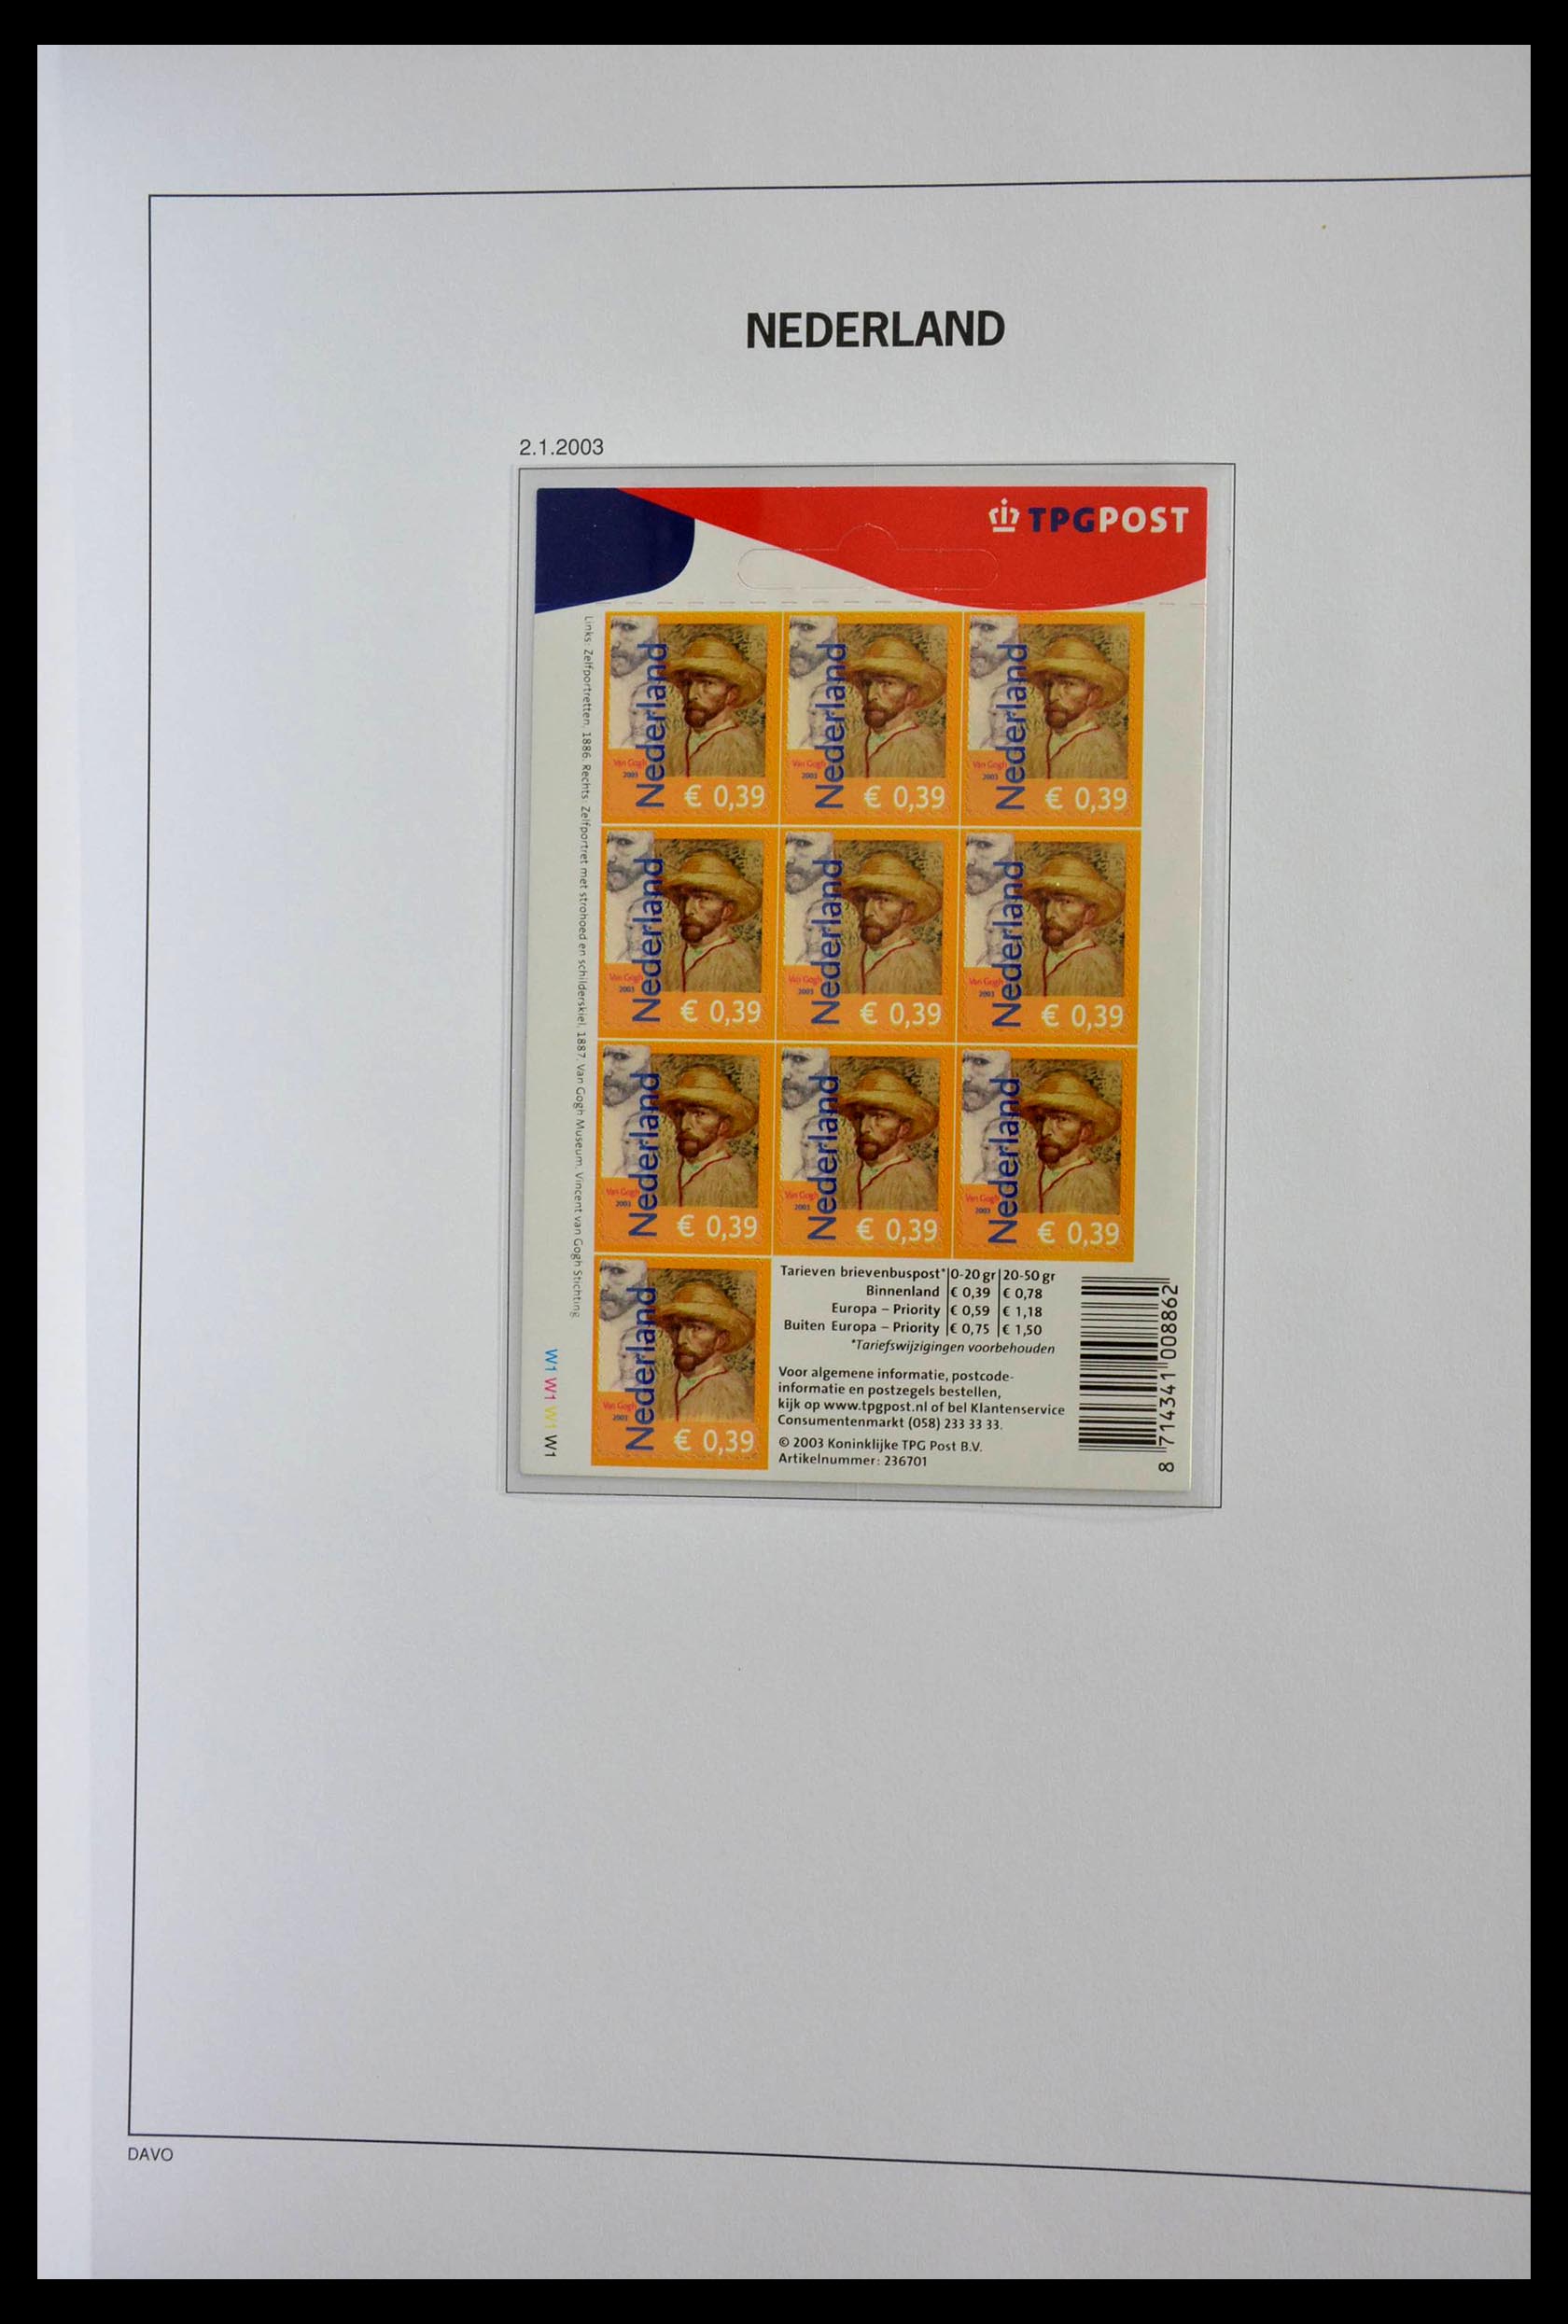 28853 040 - 28853 Netherlands stampbooklets 1964-2005.